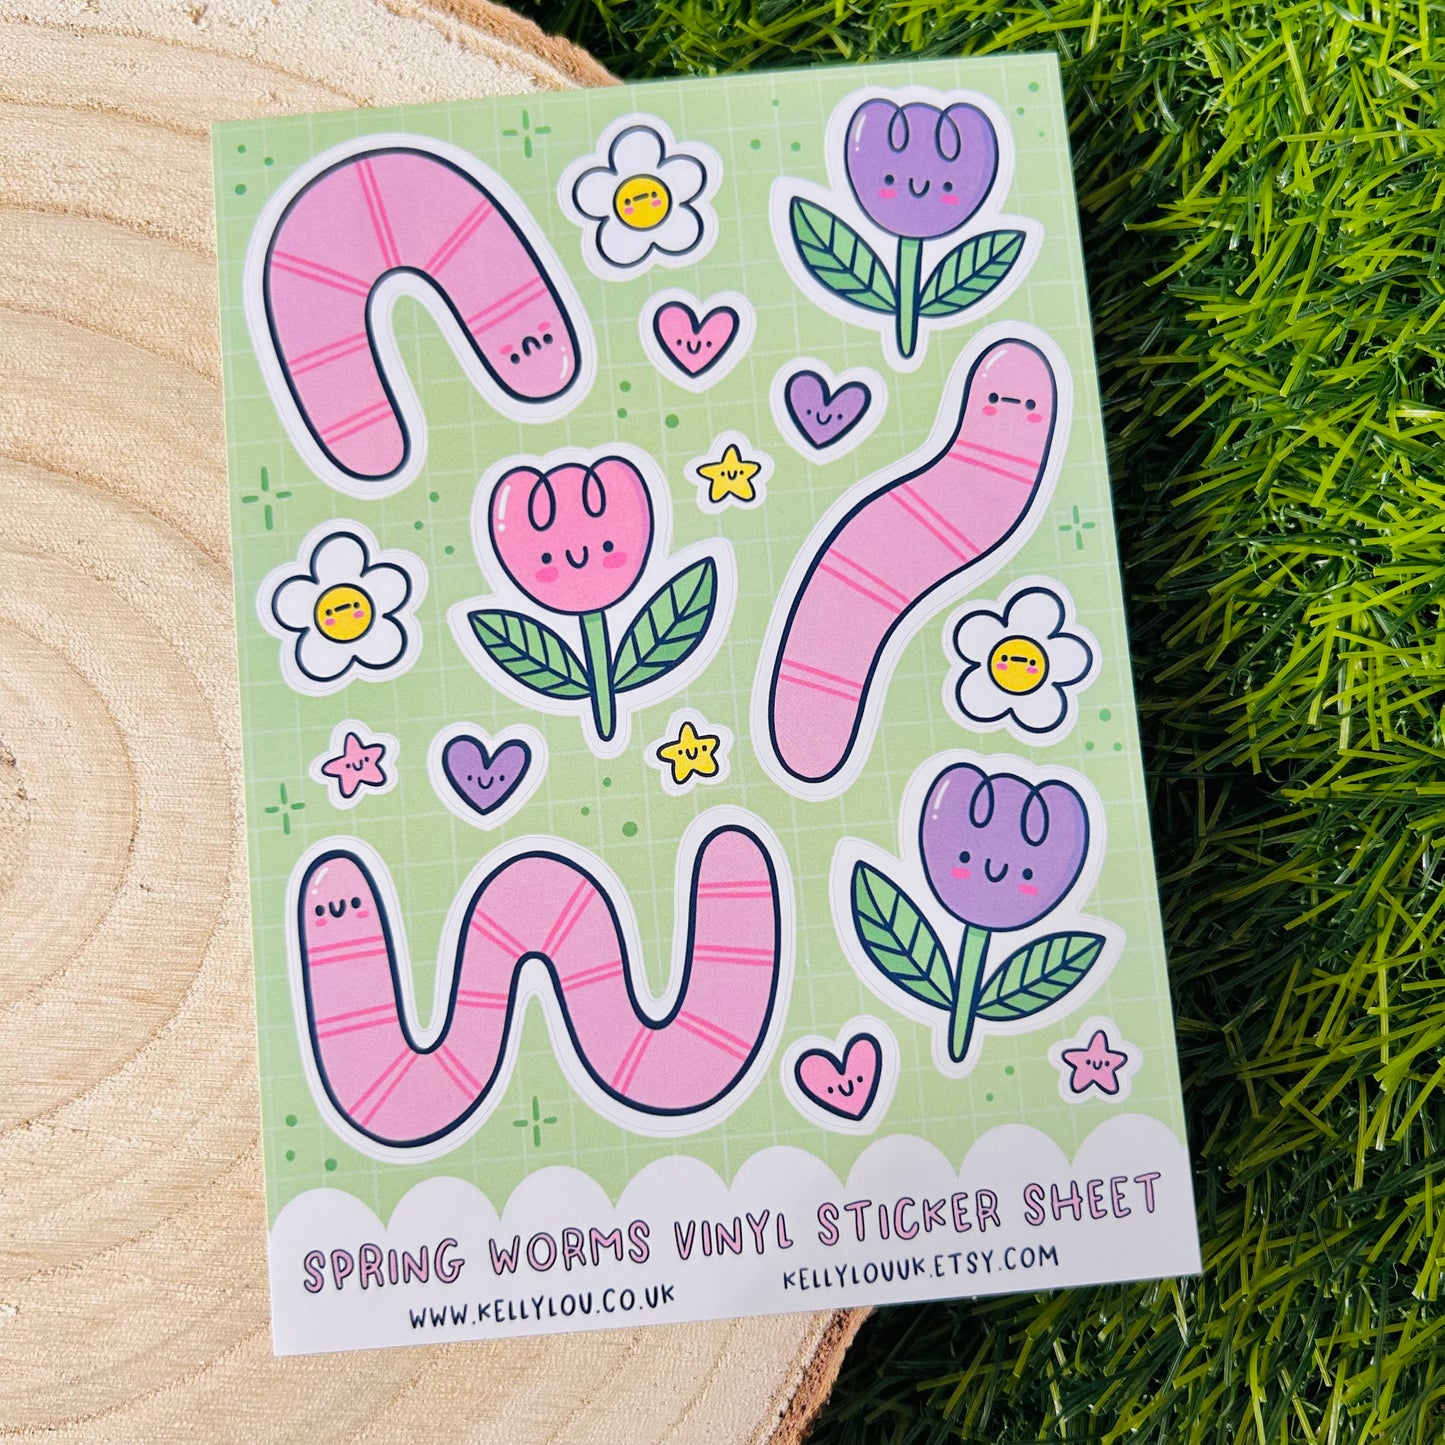 Spring Worms Vinyl Sticker Sheet